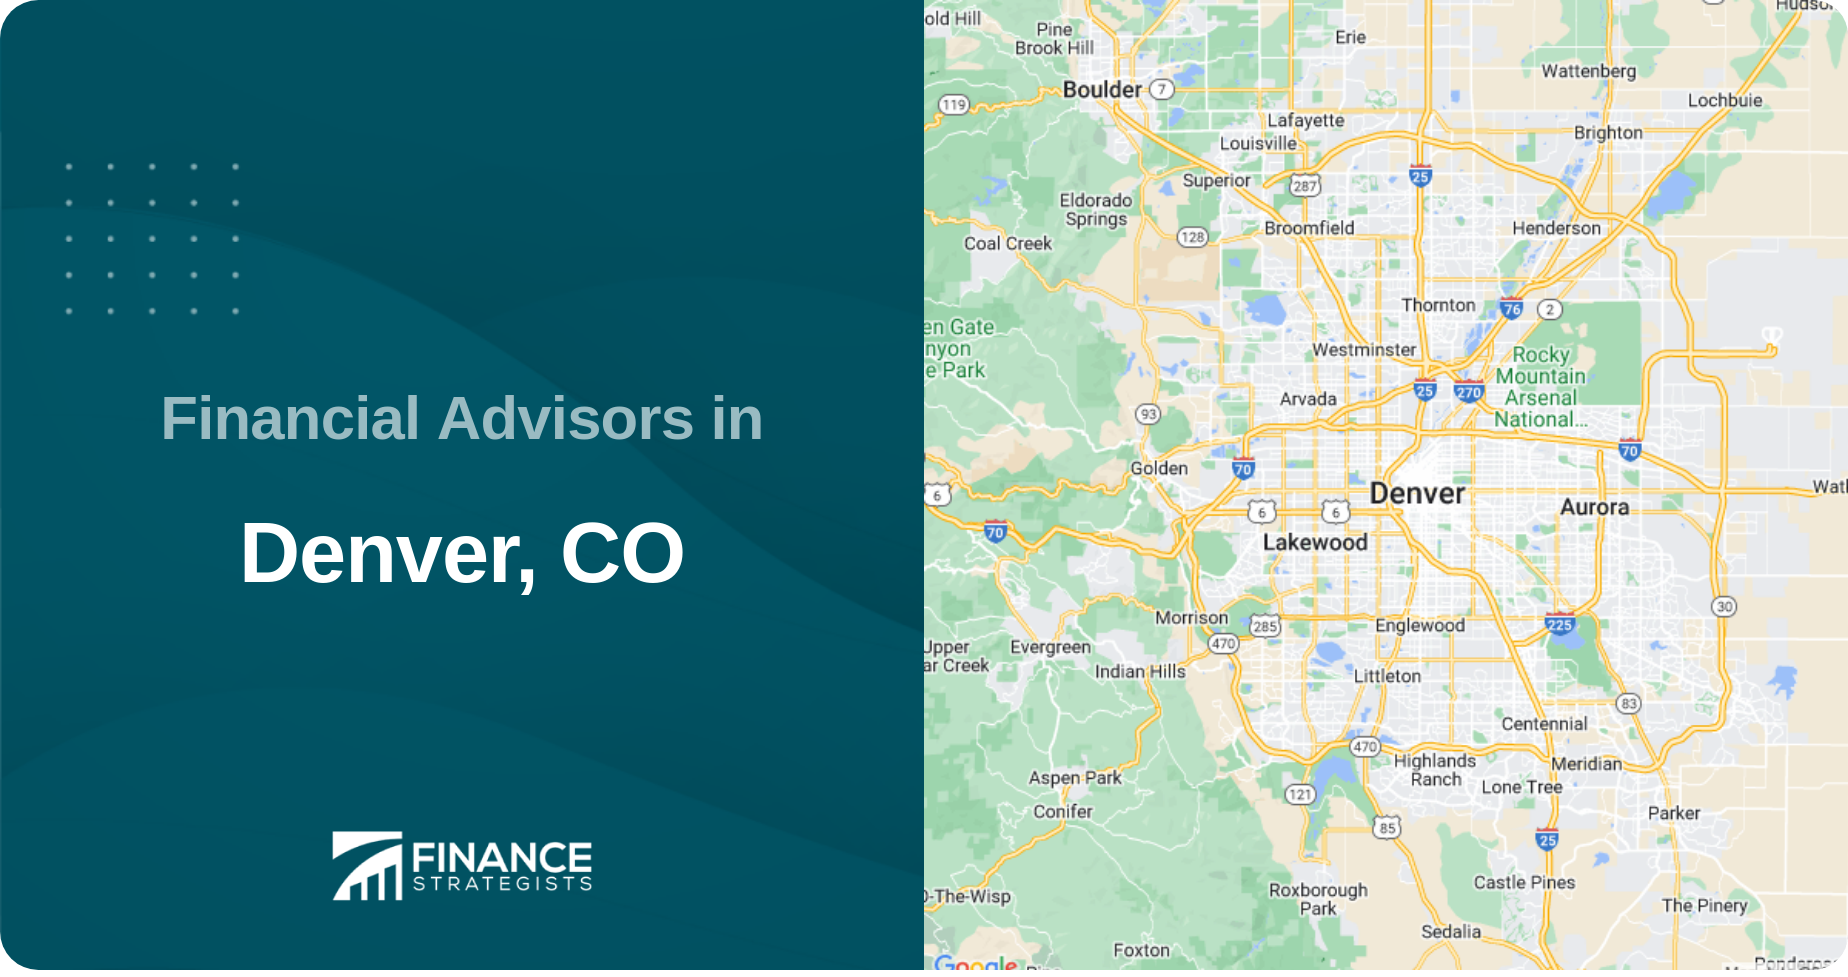 Financial Advisors in Denver, CO